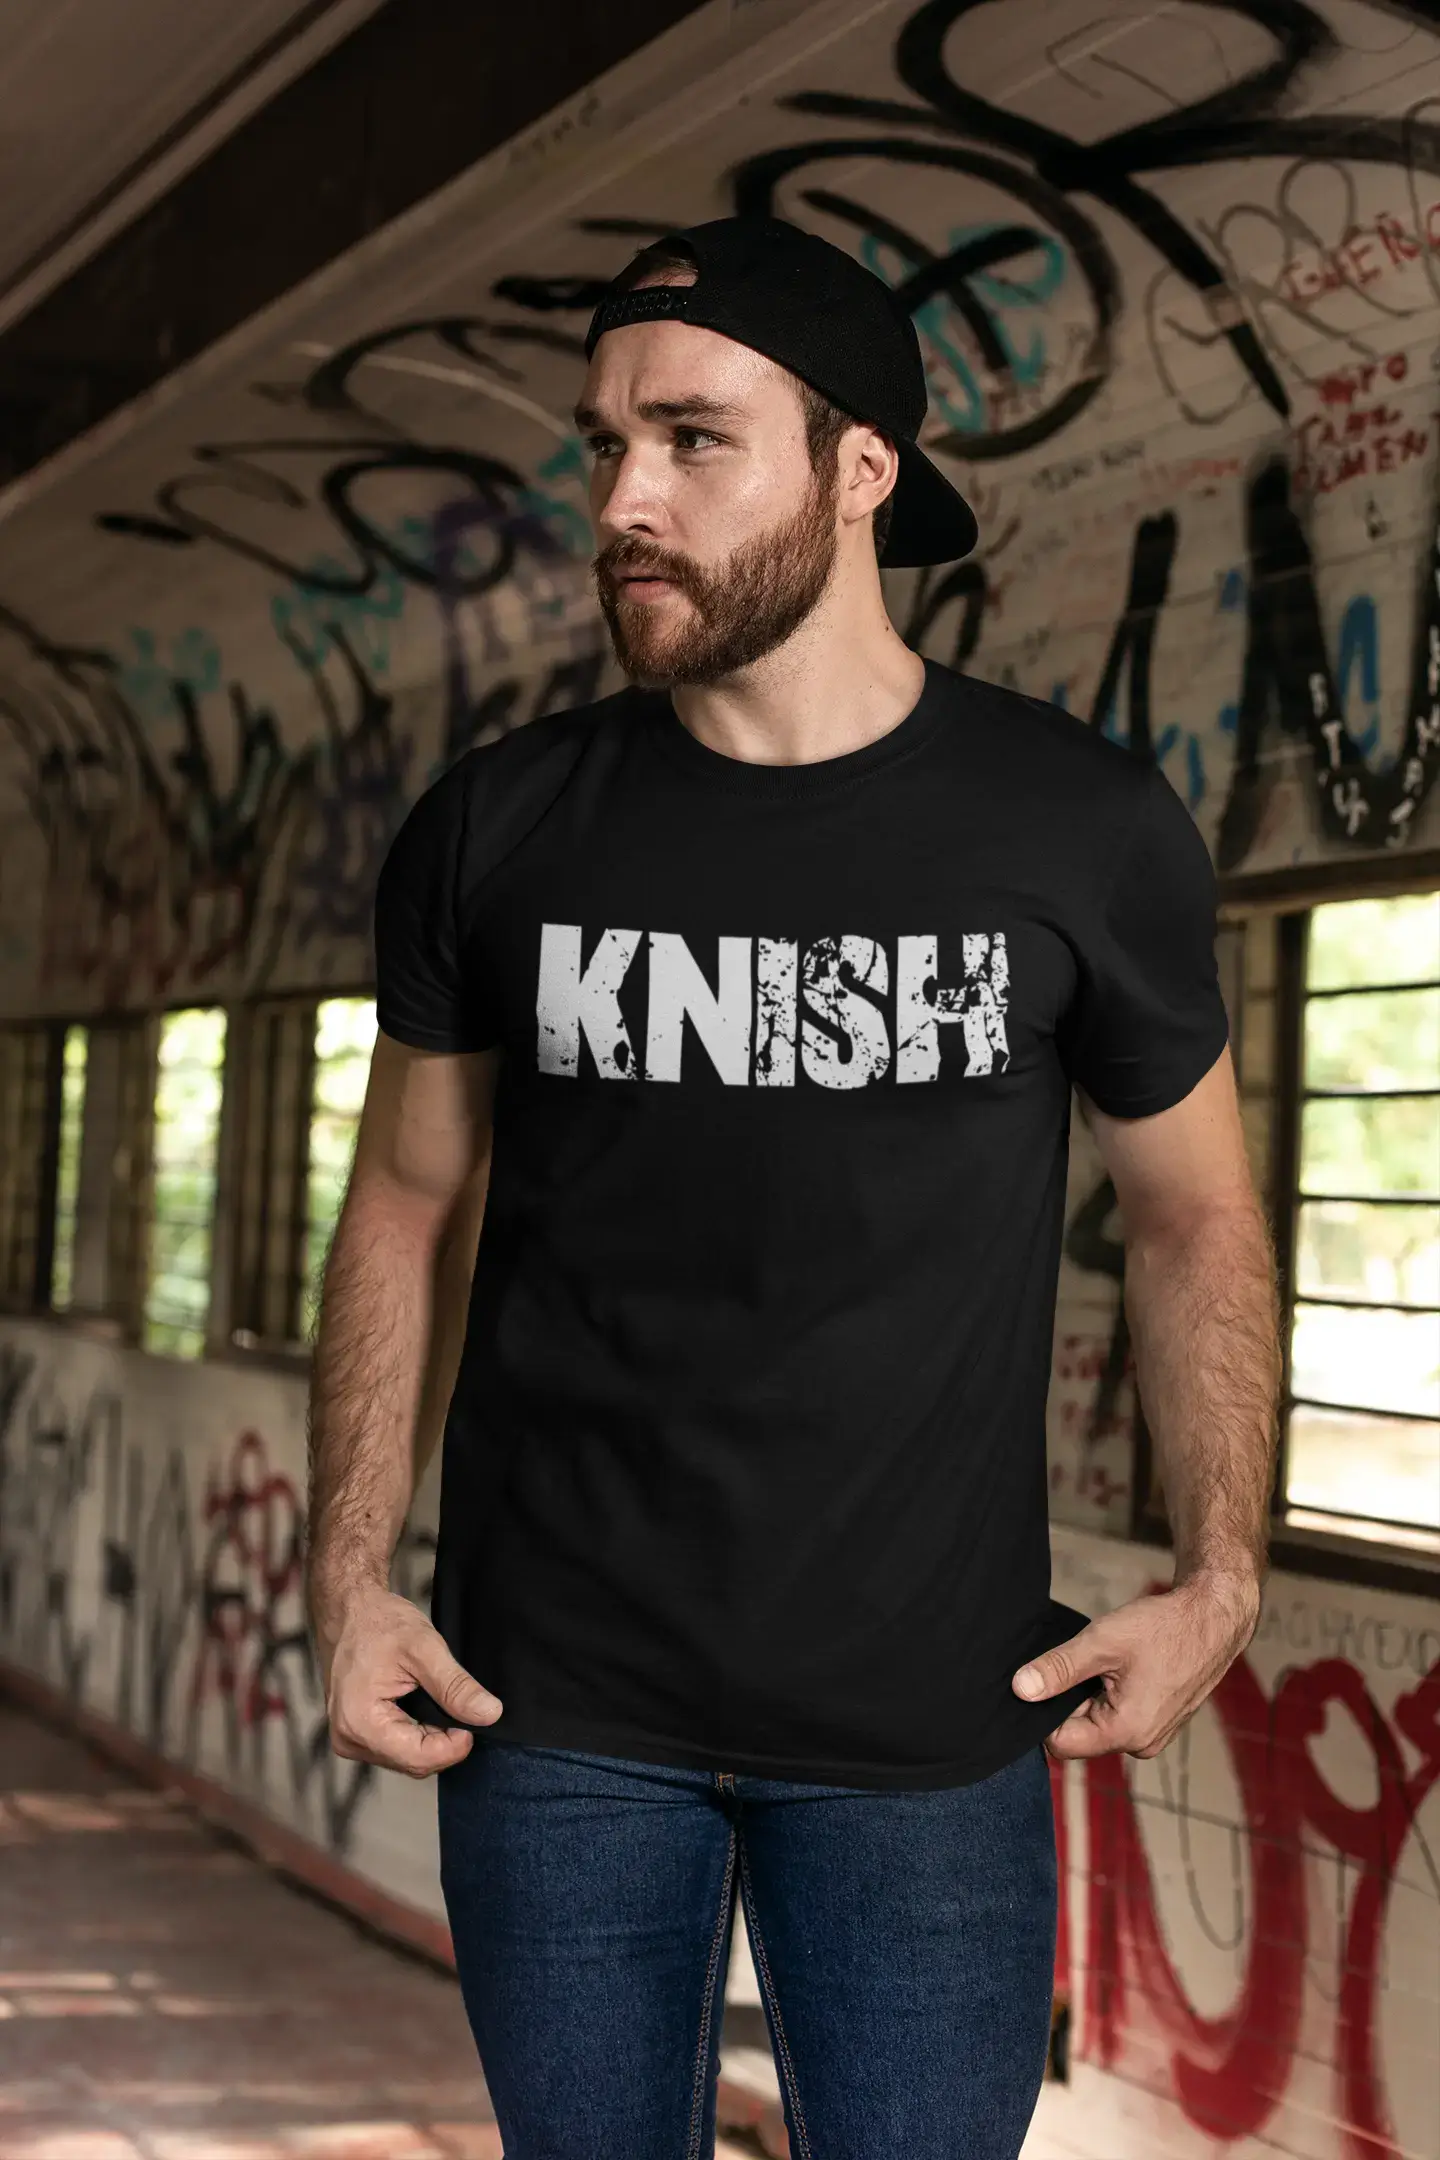 knish Men's Retro T shirt Black Birthday Gift 00553